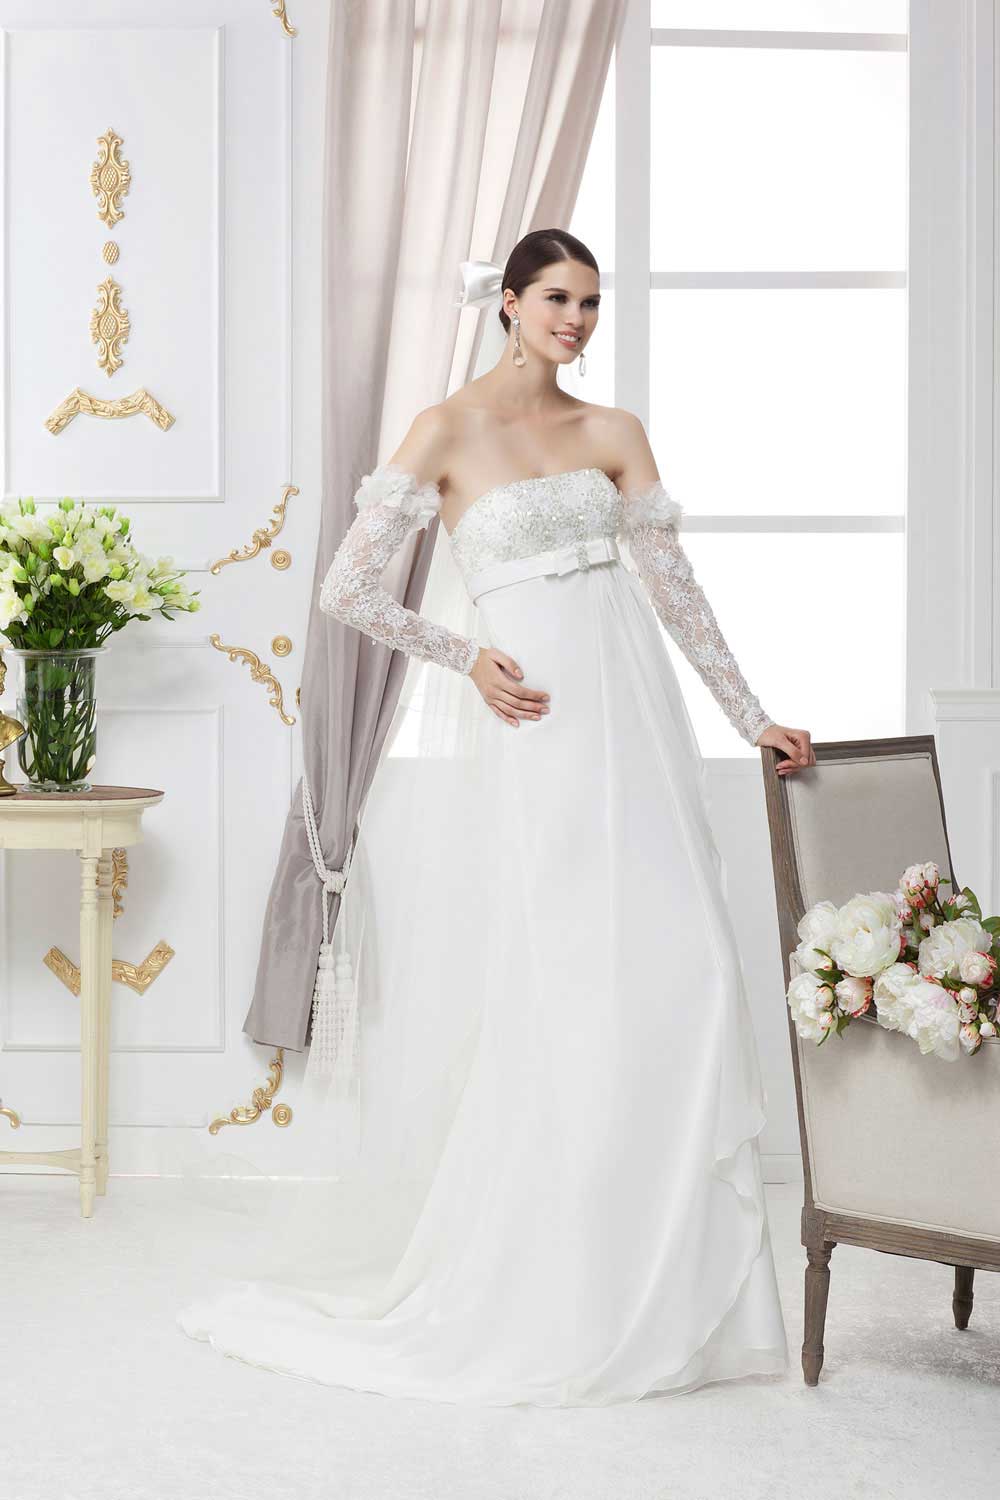 wedding dresses in Lebanon, weddings in Lebanon, wedding gowns in Lebanon, Lebanon wedding dresses, Lebanese brides